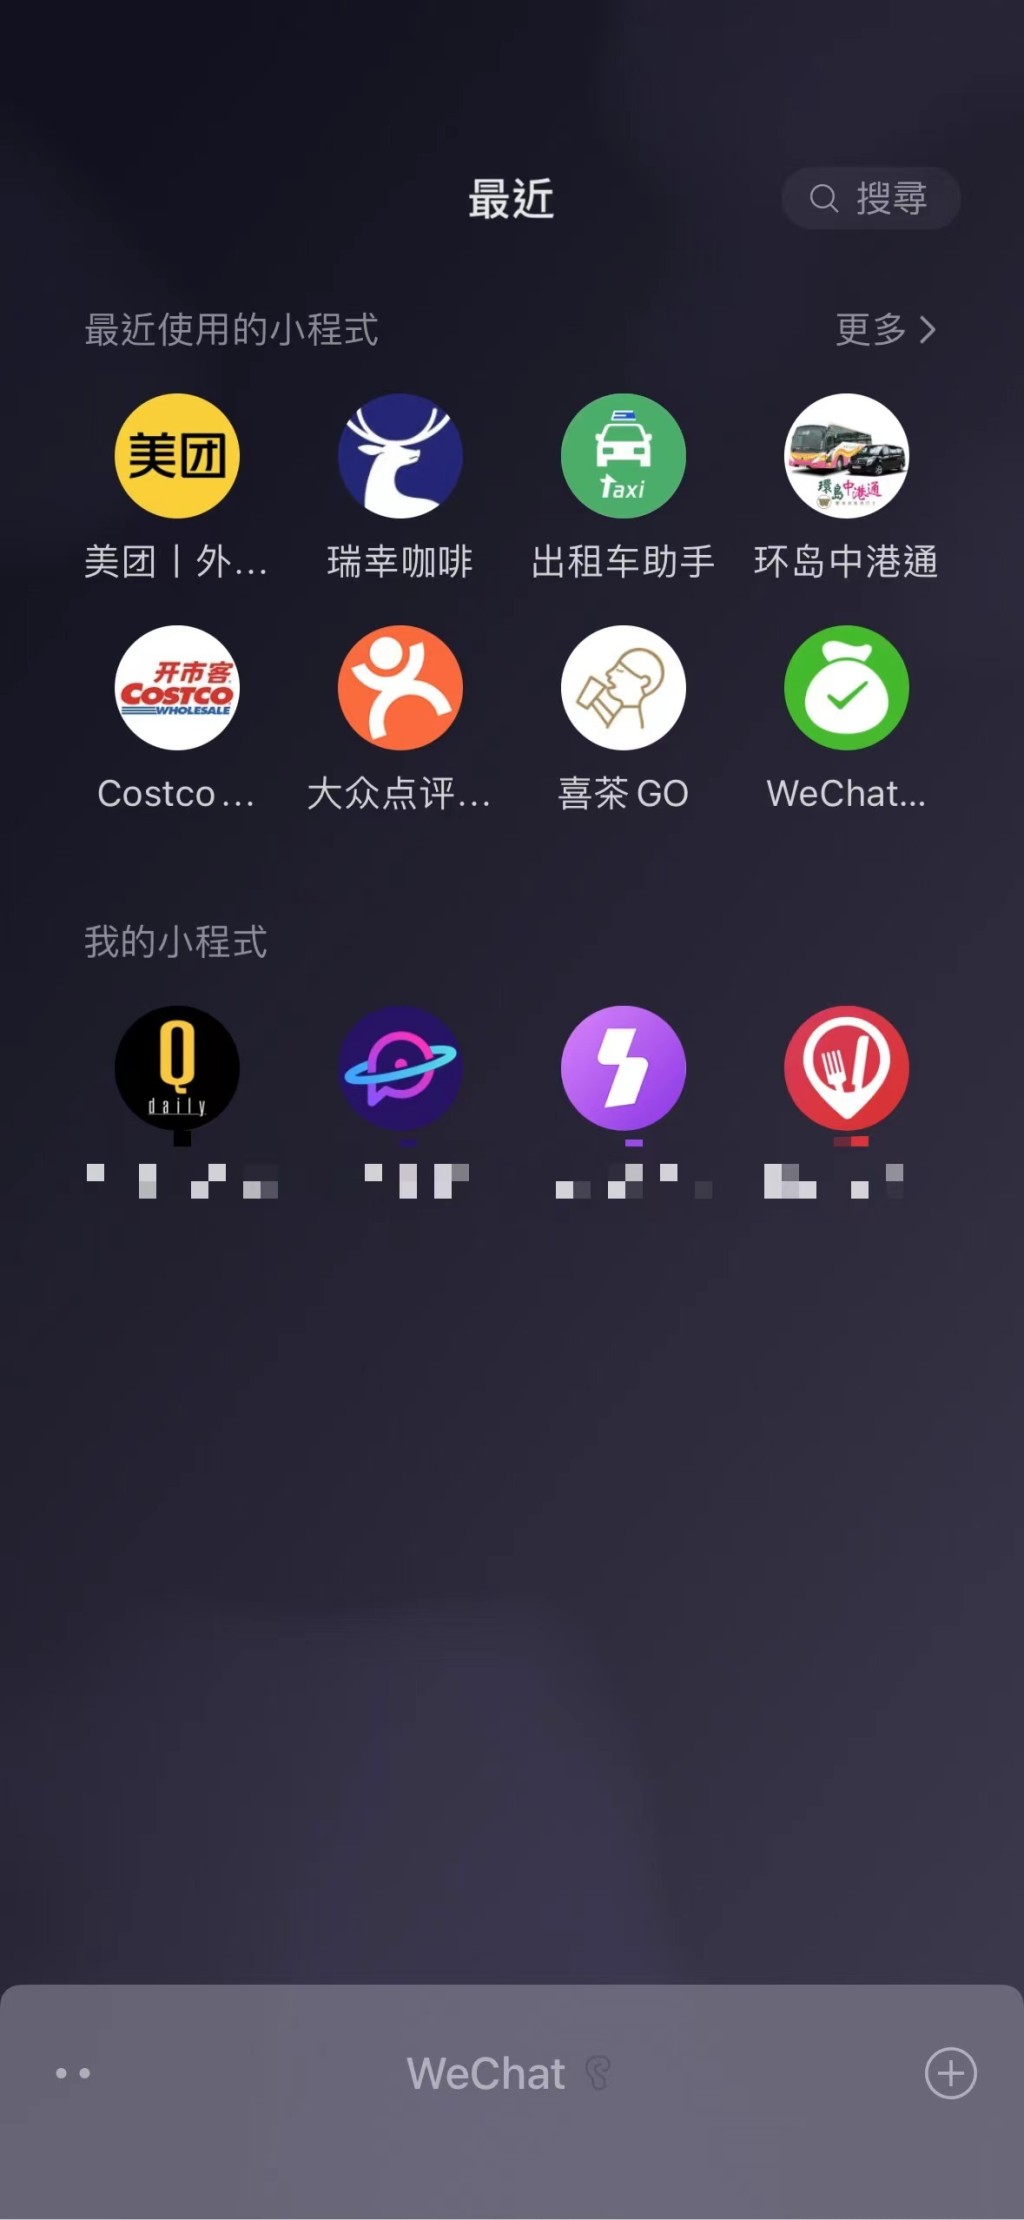 美團團購優惠券查閱方法：1. WeChat 聊天頁面向下拉，於「最近使用的小程式」點擊進入「美團」小程序